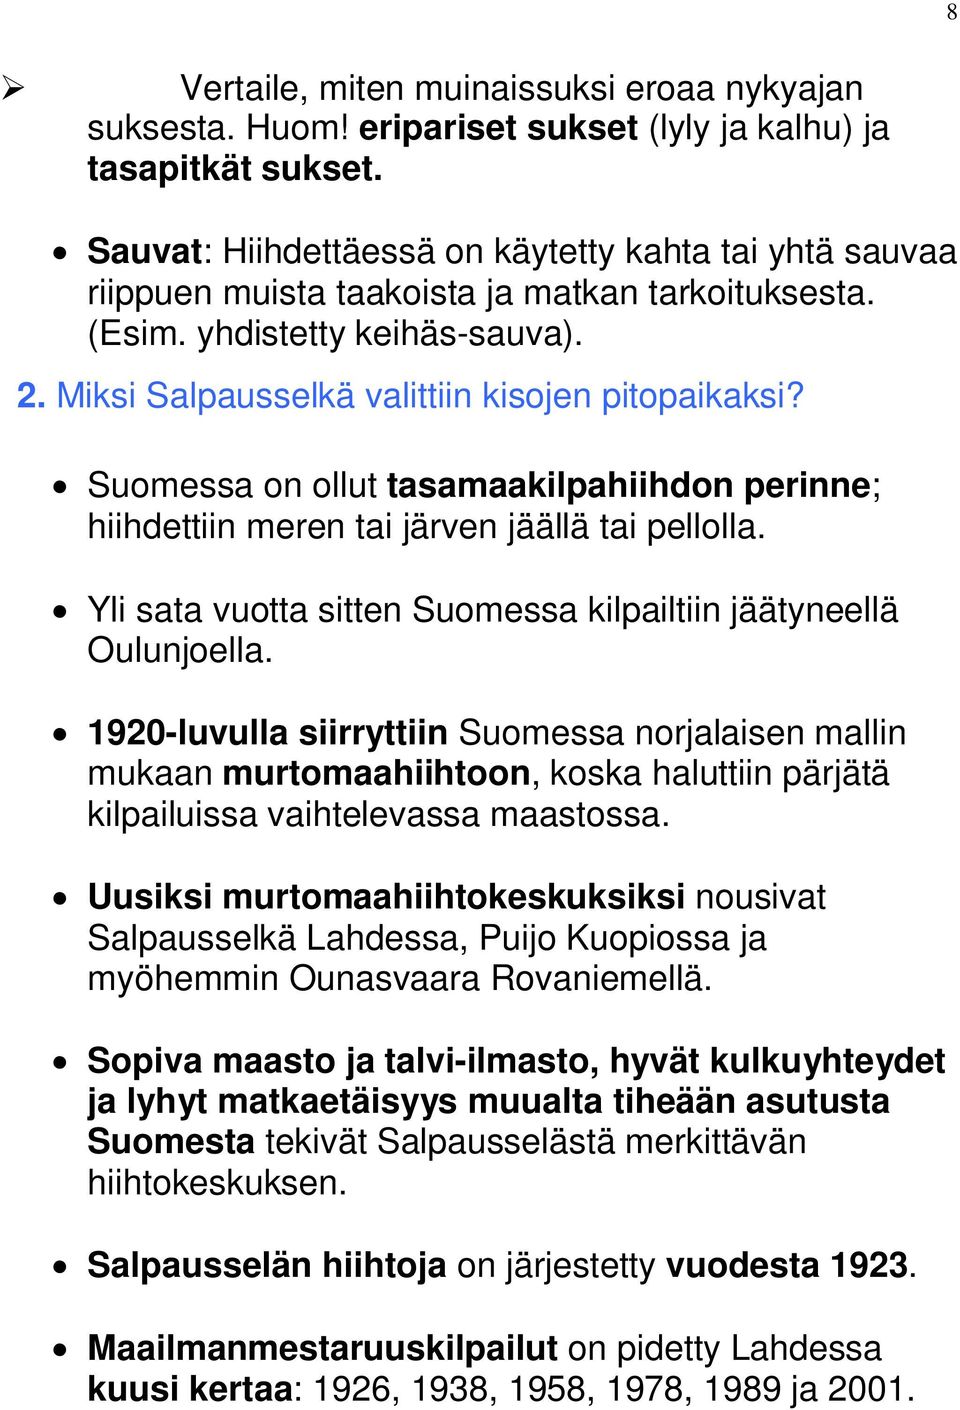 Suomessa on ollut tasamaakilpahiihdon perinne; hiihdettiin meren tai järven jäällä tai pellolla. Yli sata vuotta sitten Suomessa kilpailtiin jäätyneellä Oulunjoella.